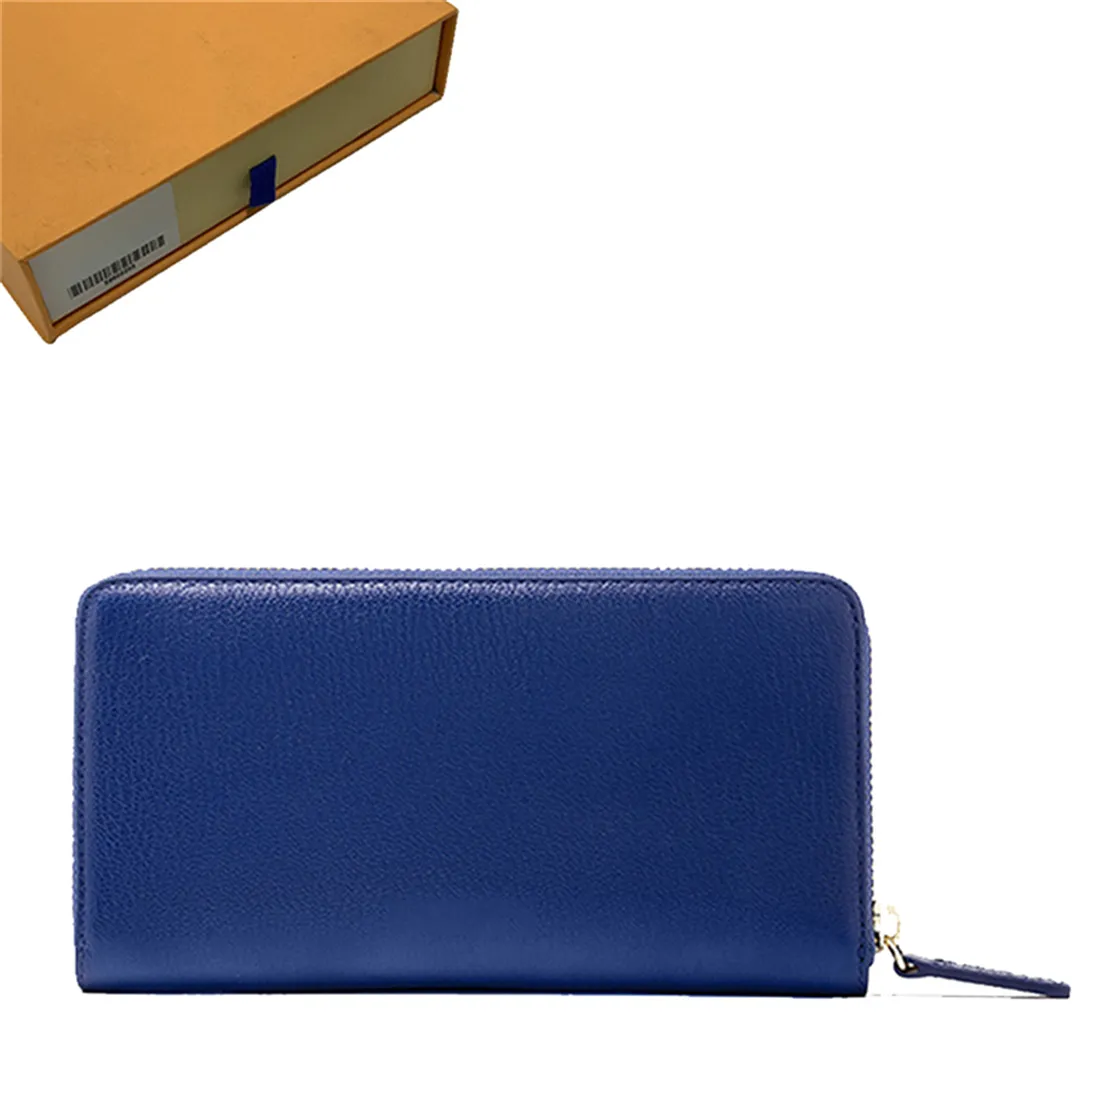 محفظة المرأة محفظة محفظة zippy محفظة محفظة طويلة محافظ طية بطاقة جواز سفر جواز سفر محافظ مطوية المحافظ عملة بوش 33138